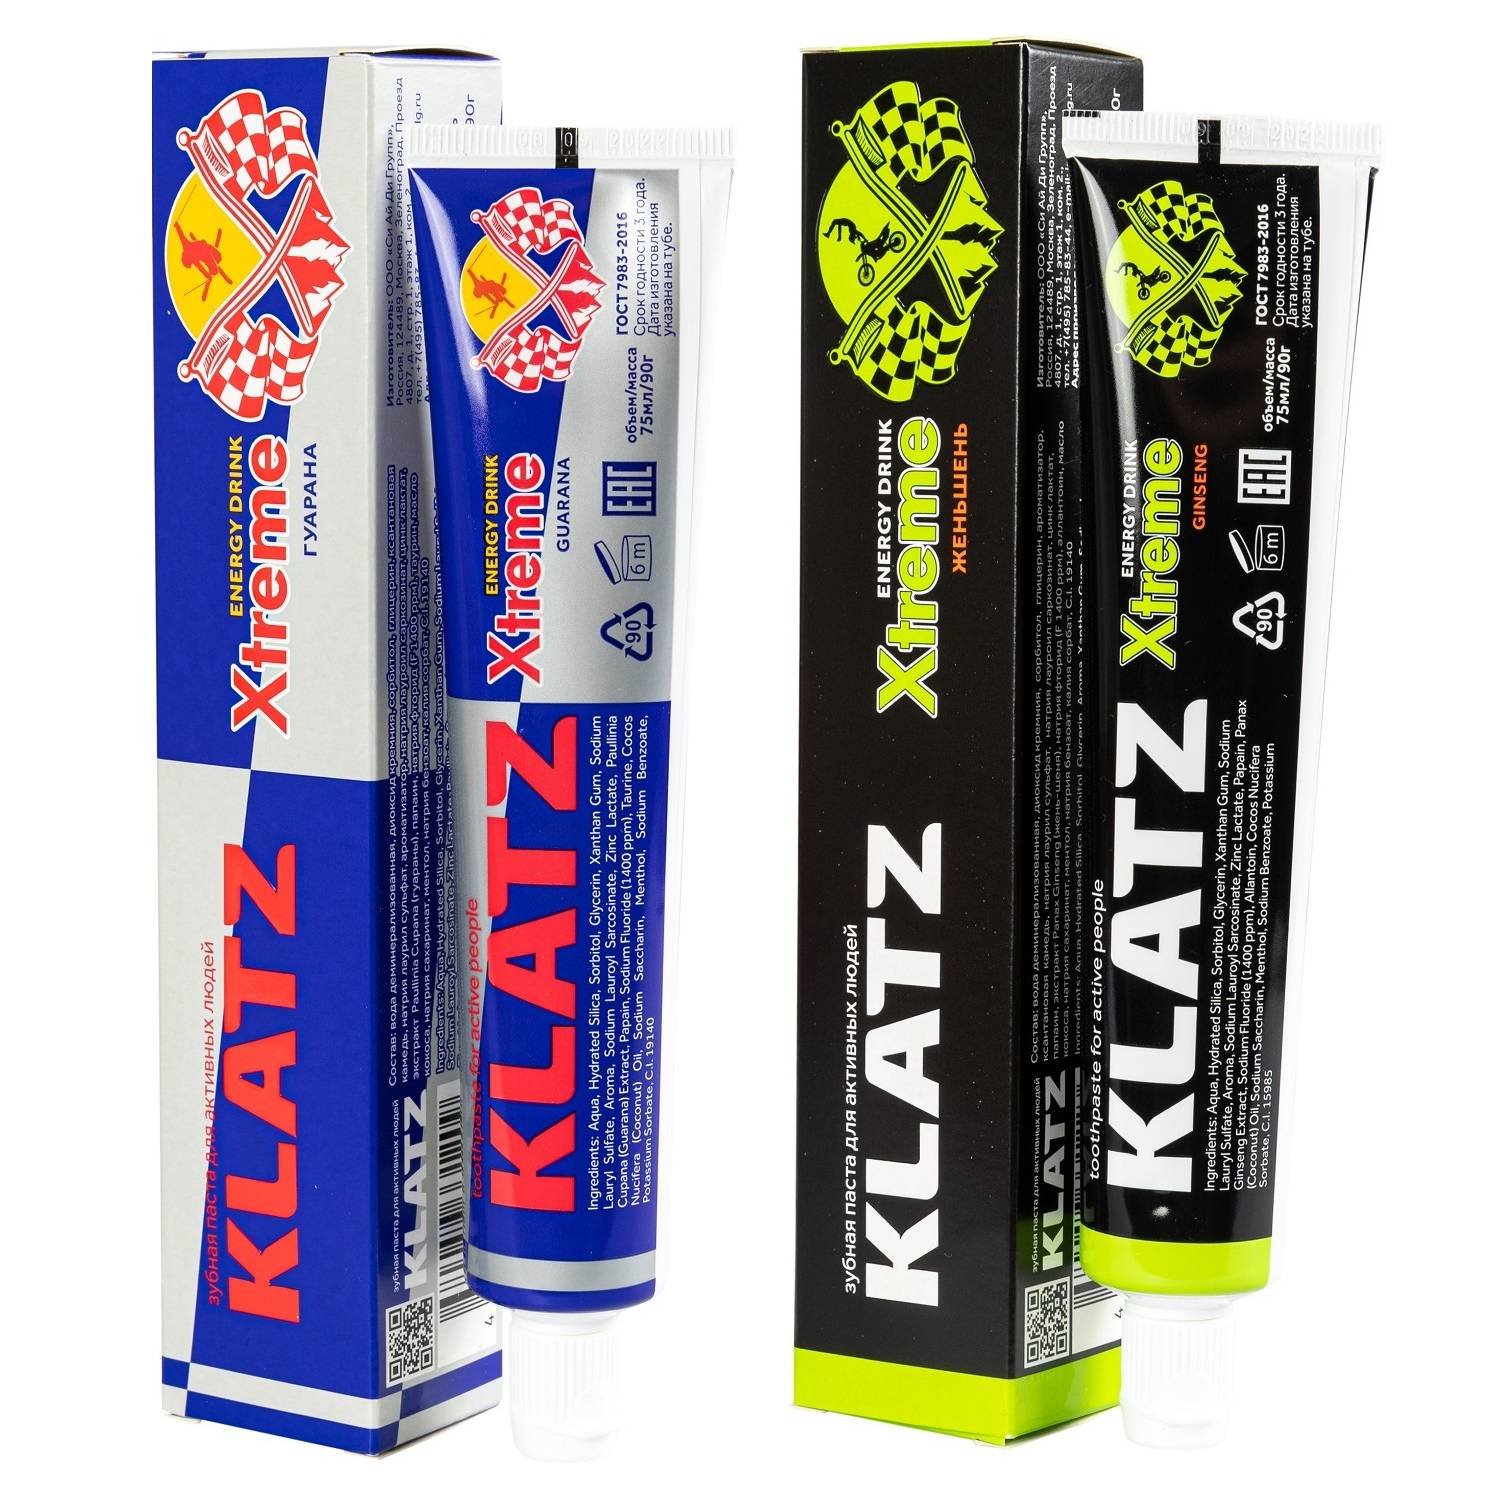 Klatz Набор зубных паст Xtreme Energy Drink: гуарана 75 мл + женьшень 75 мл (Klatz, Xtreme Energy Drink)